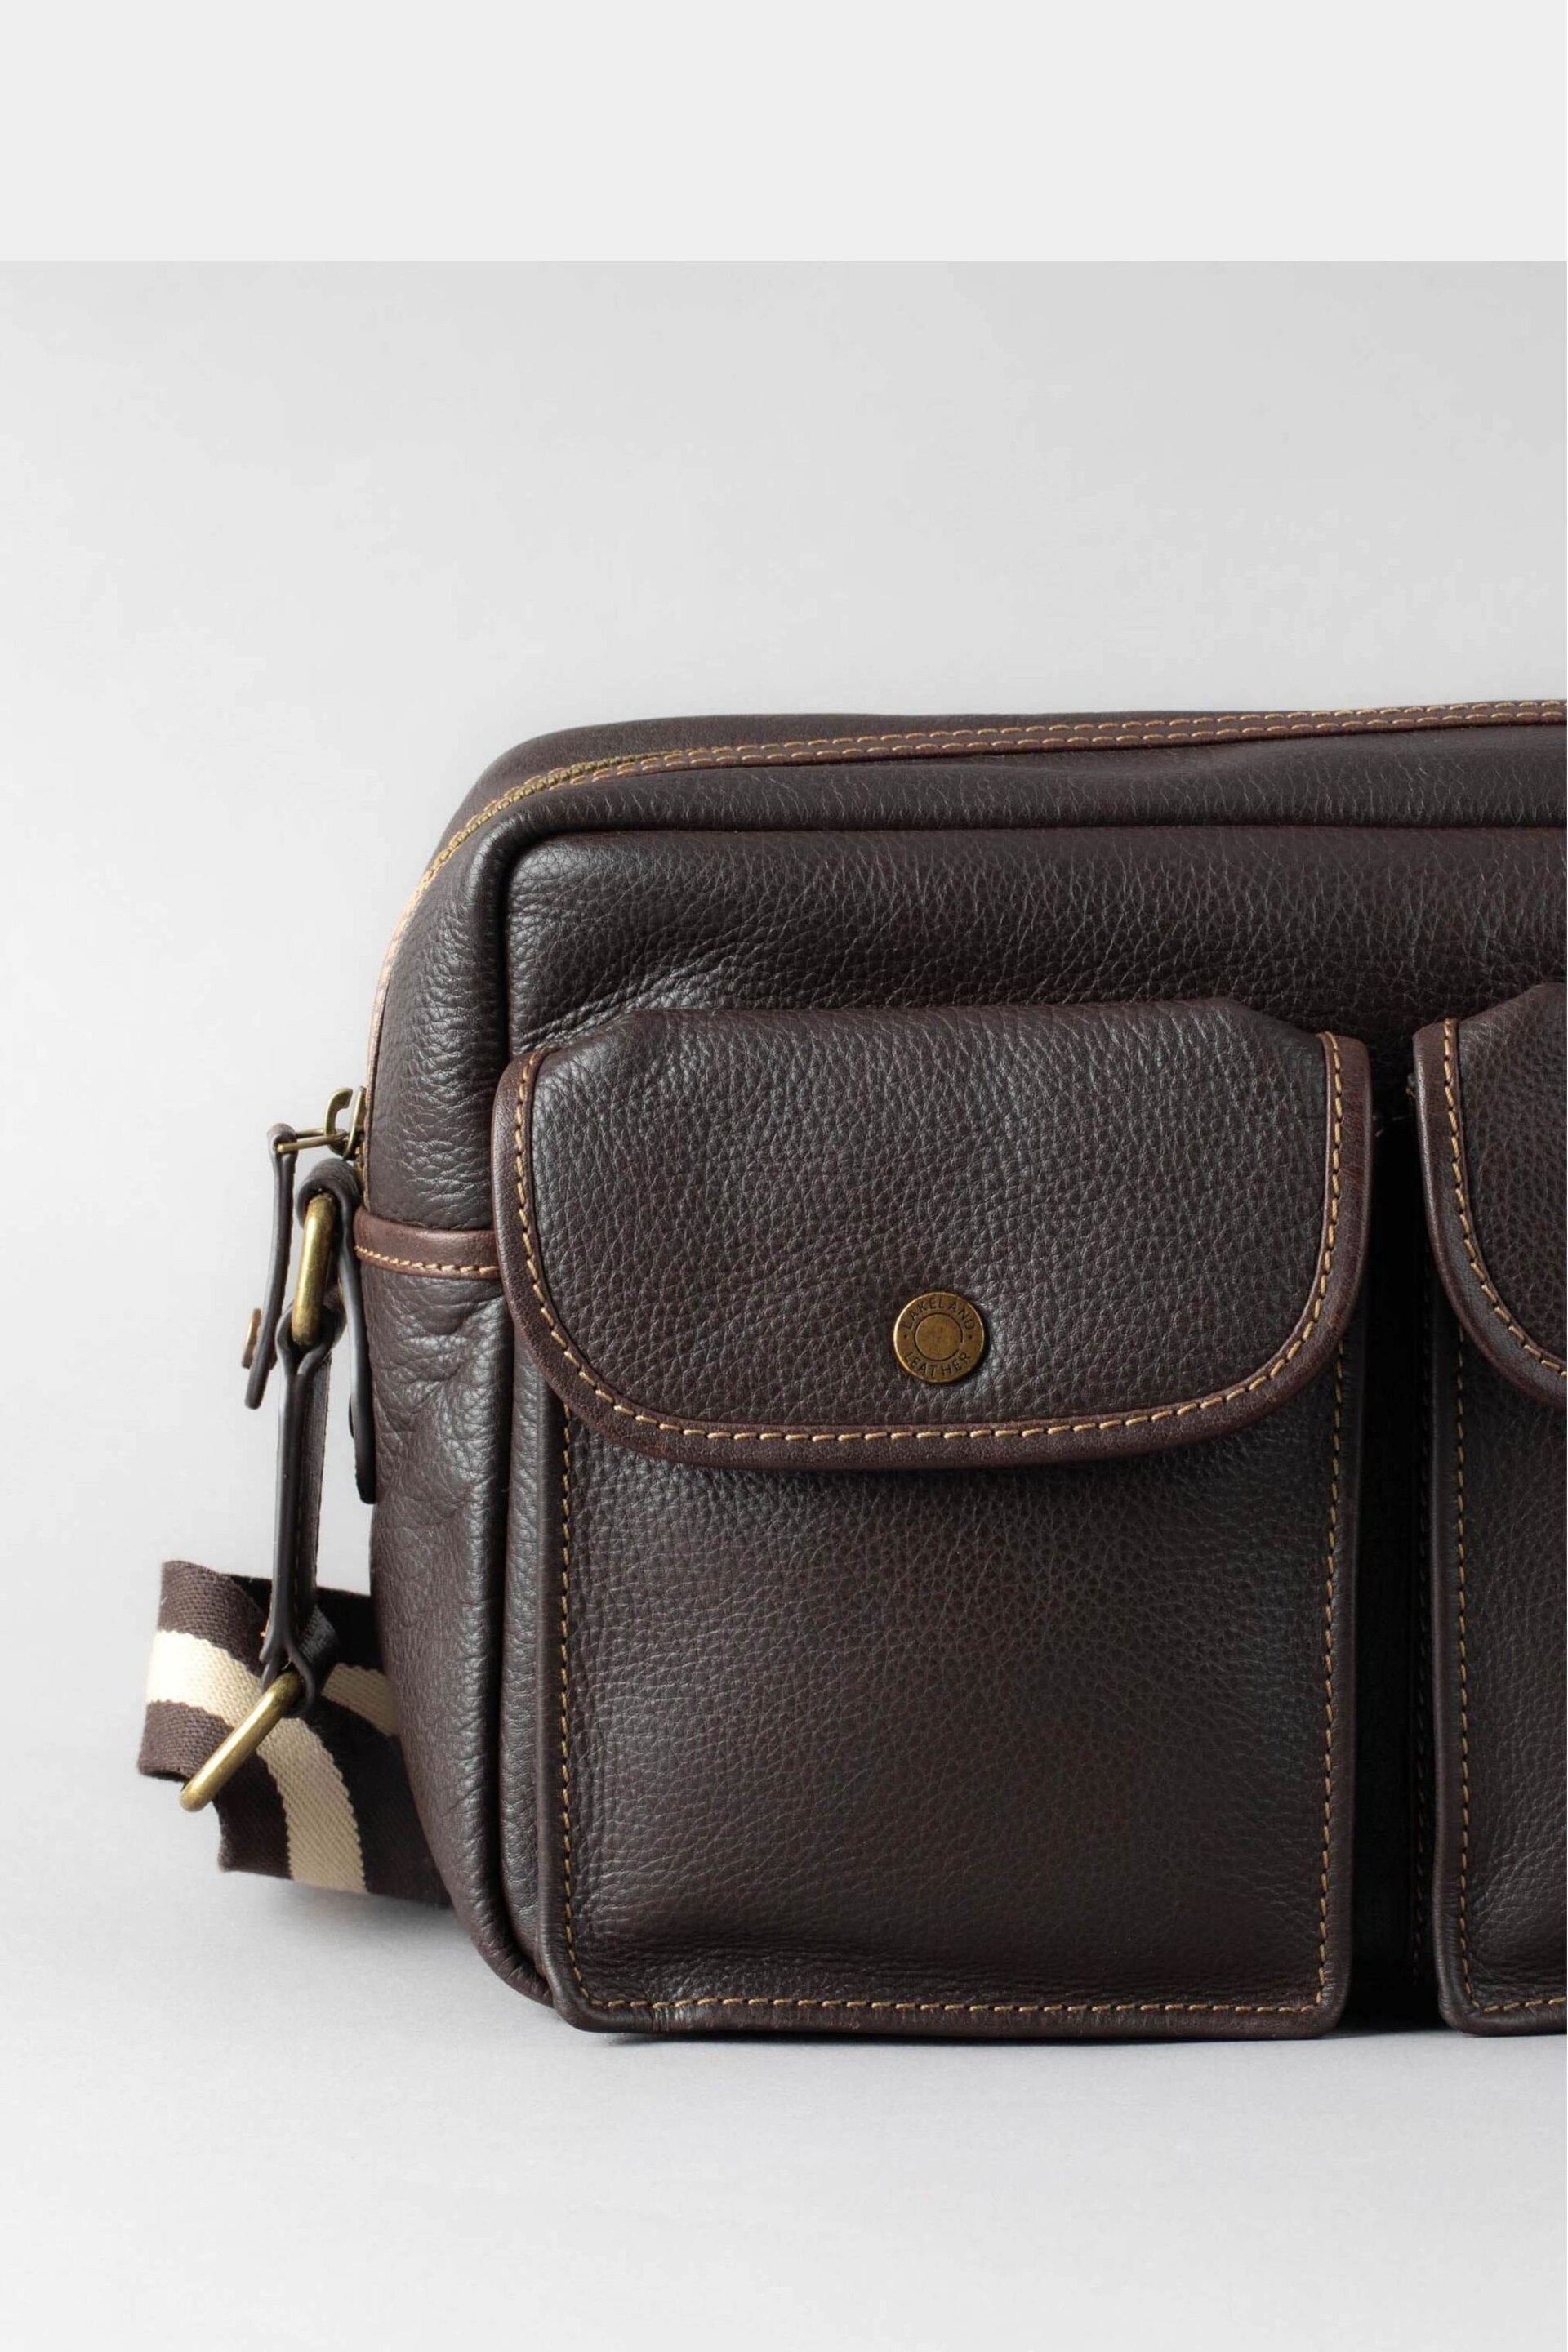 Lakeland Leather Kelsick Leather Messenger Brown Bag - Image 3 of 9